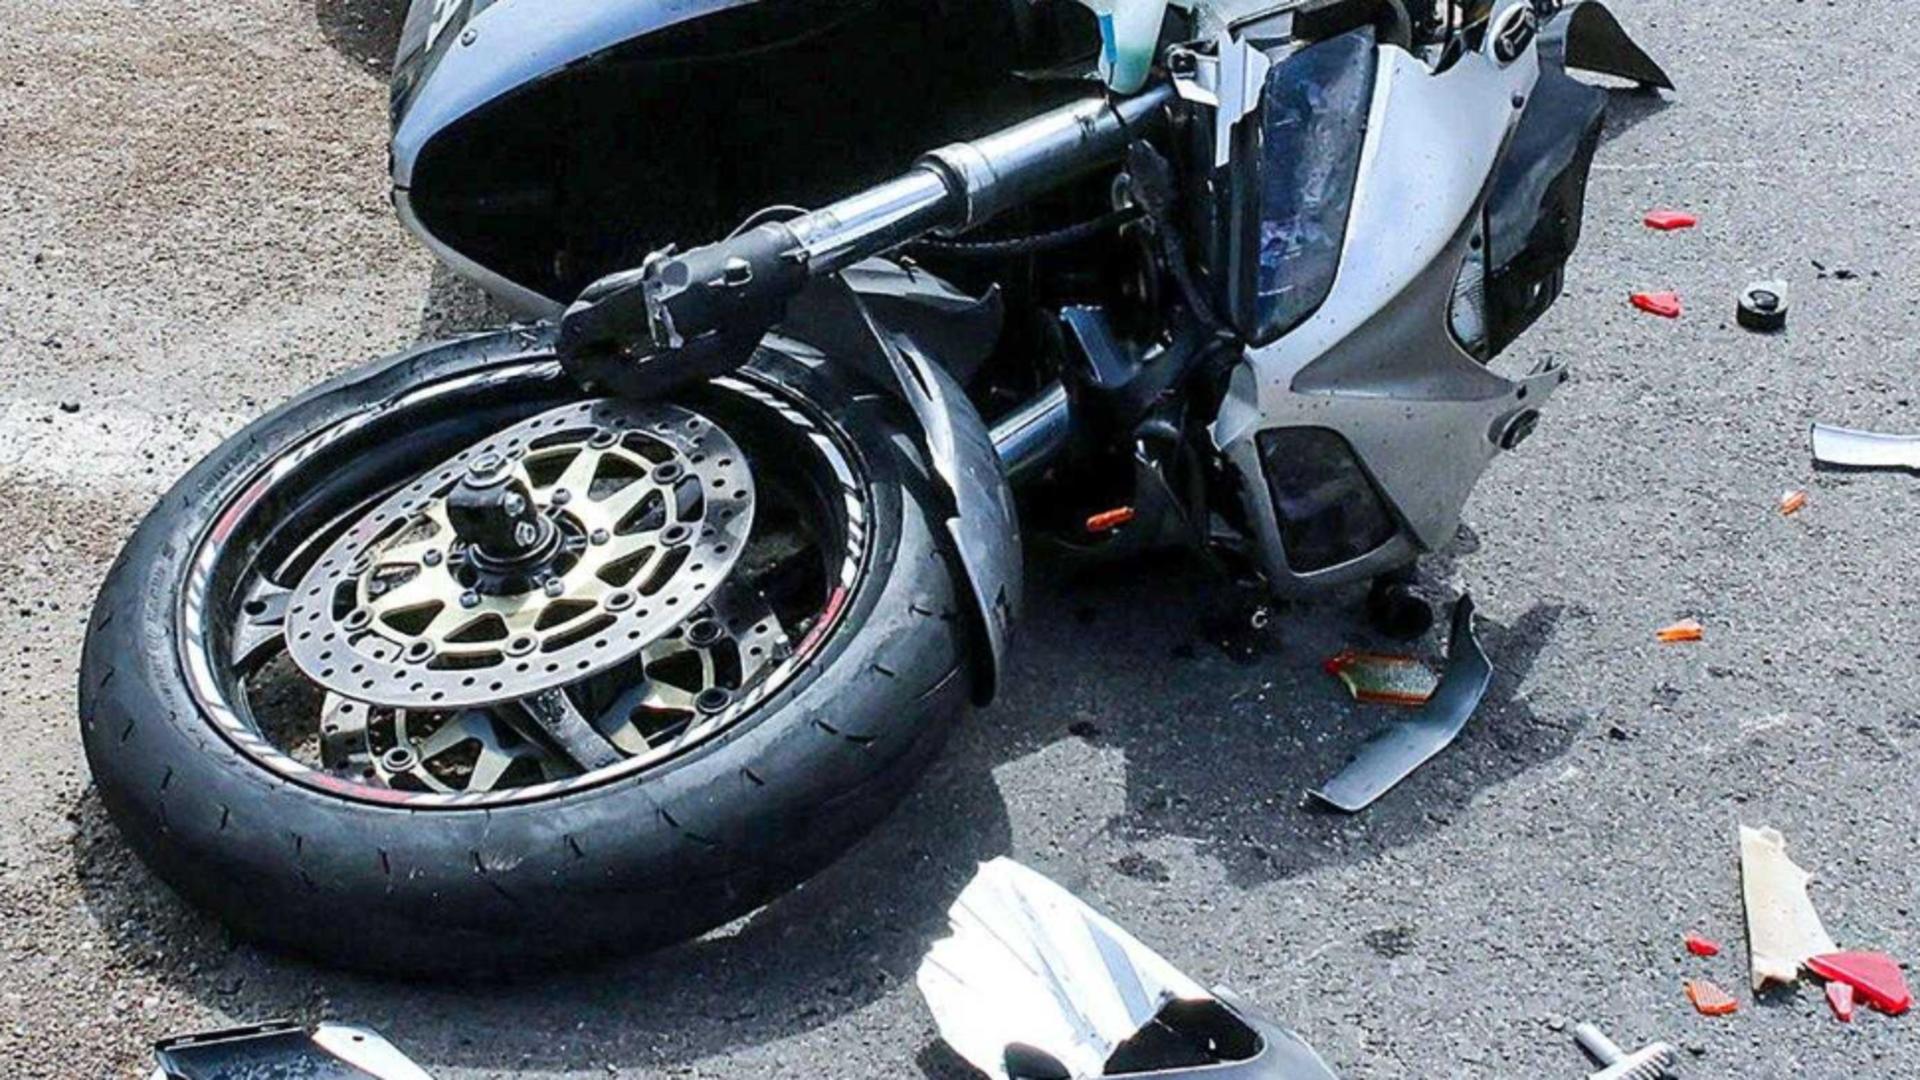 O nouă tragedie în Timiș: Un motociclist a murit după ce s-a izbit violent de o mașină, pe contrasens - FOTO